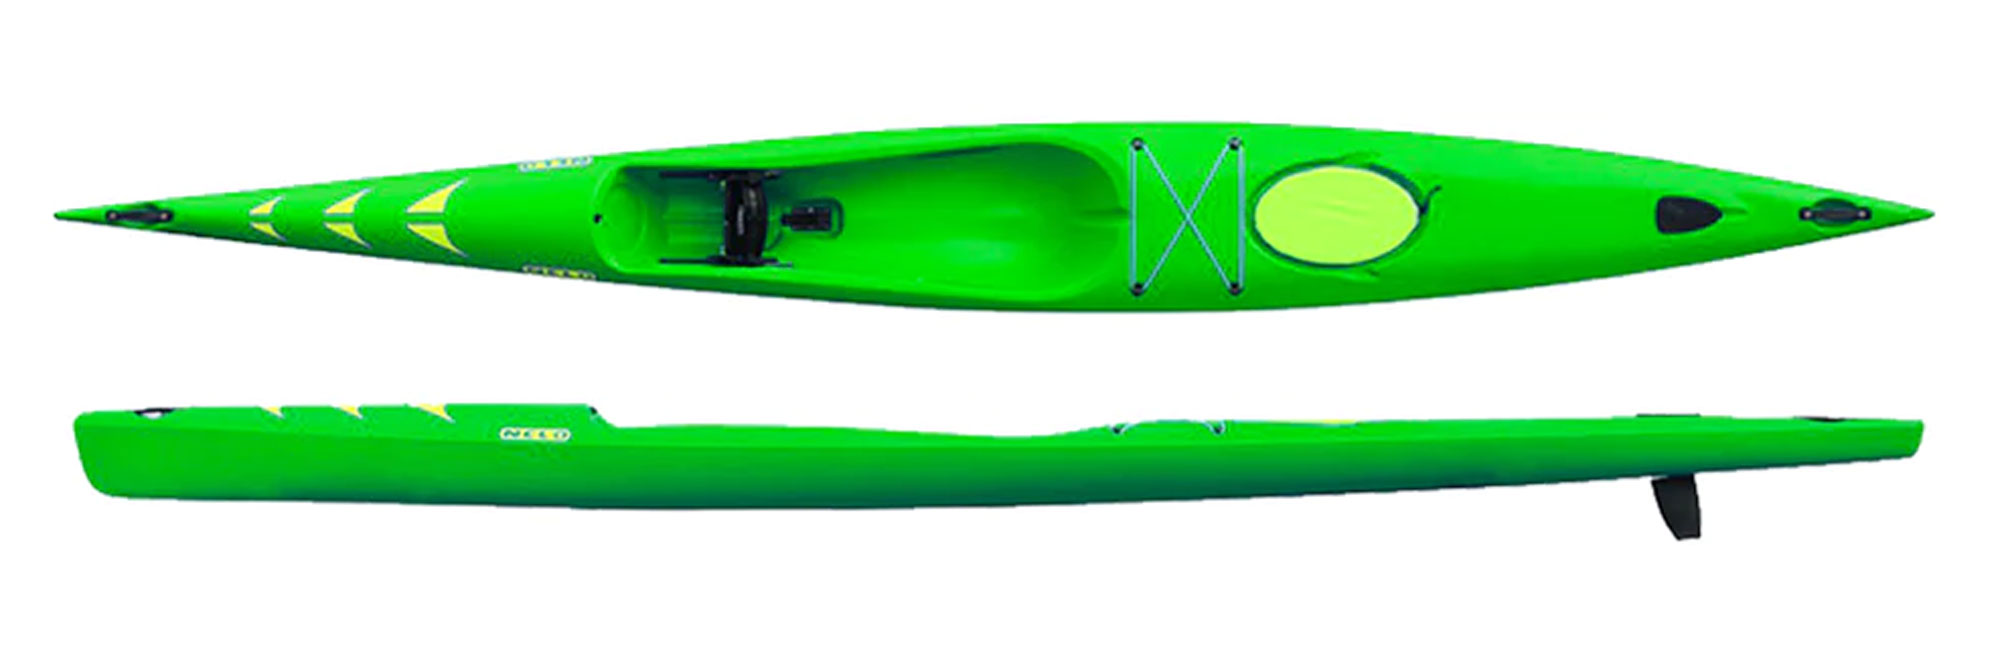 Nelo 510 in stock in Massachusetts, green poly ski super stable